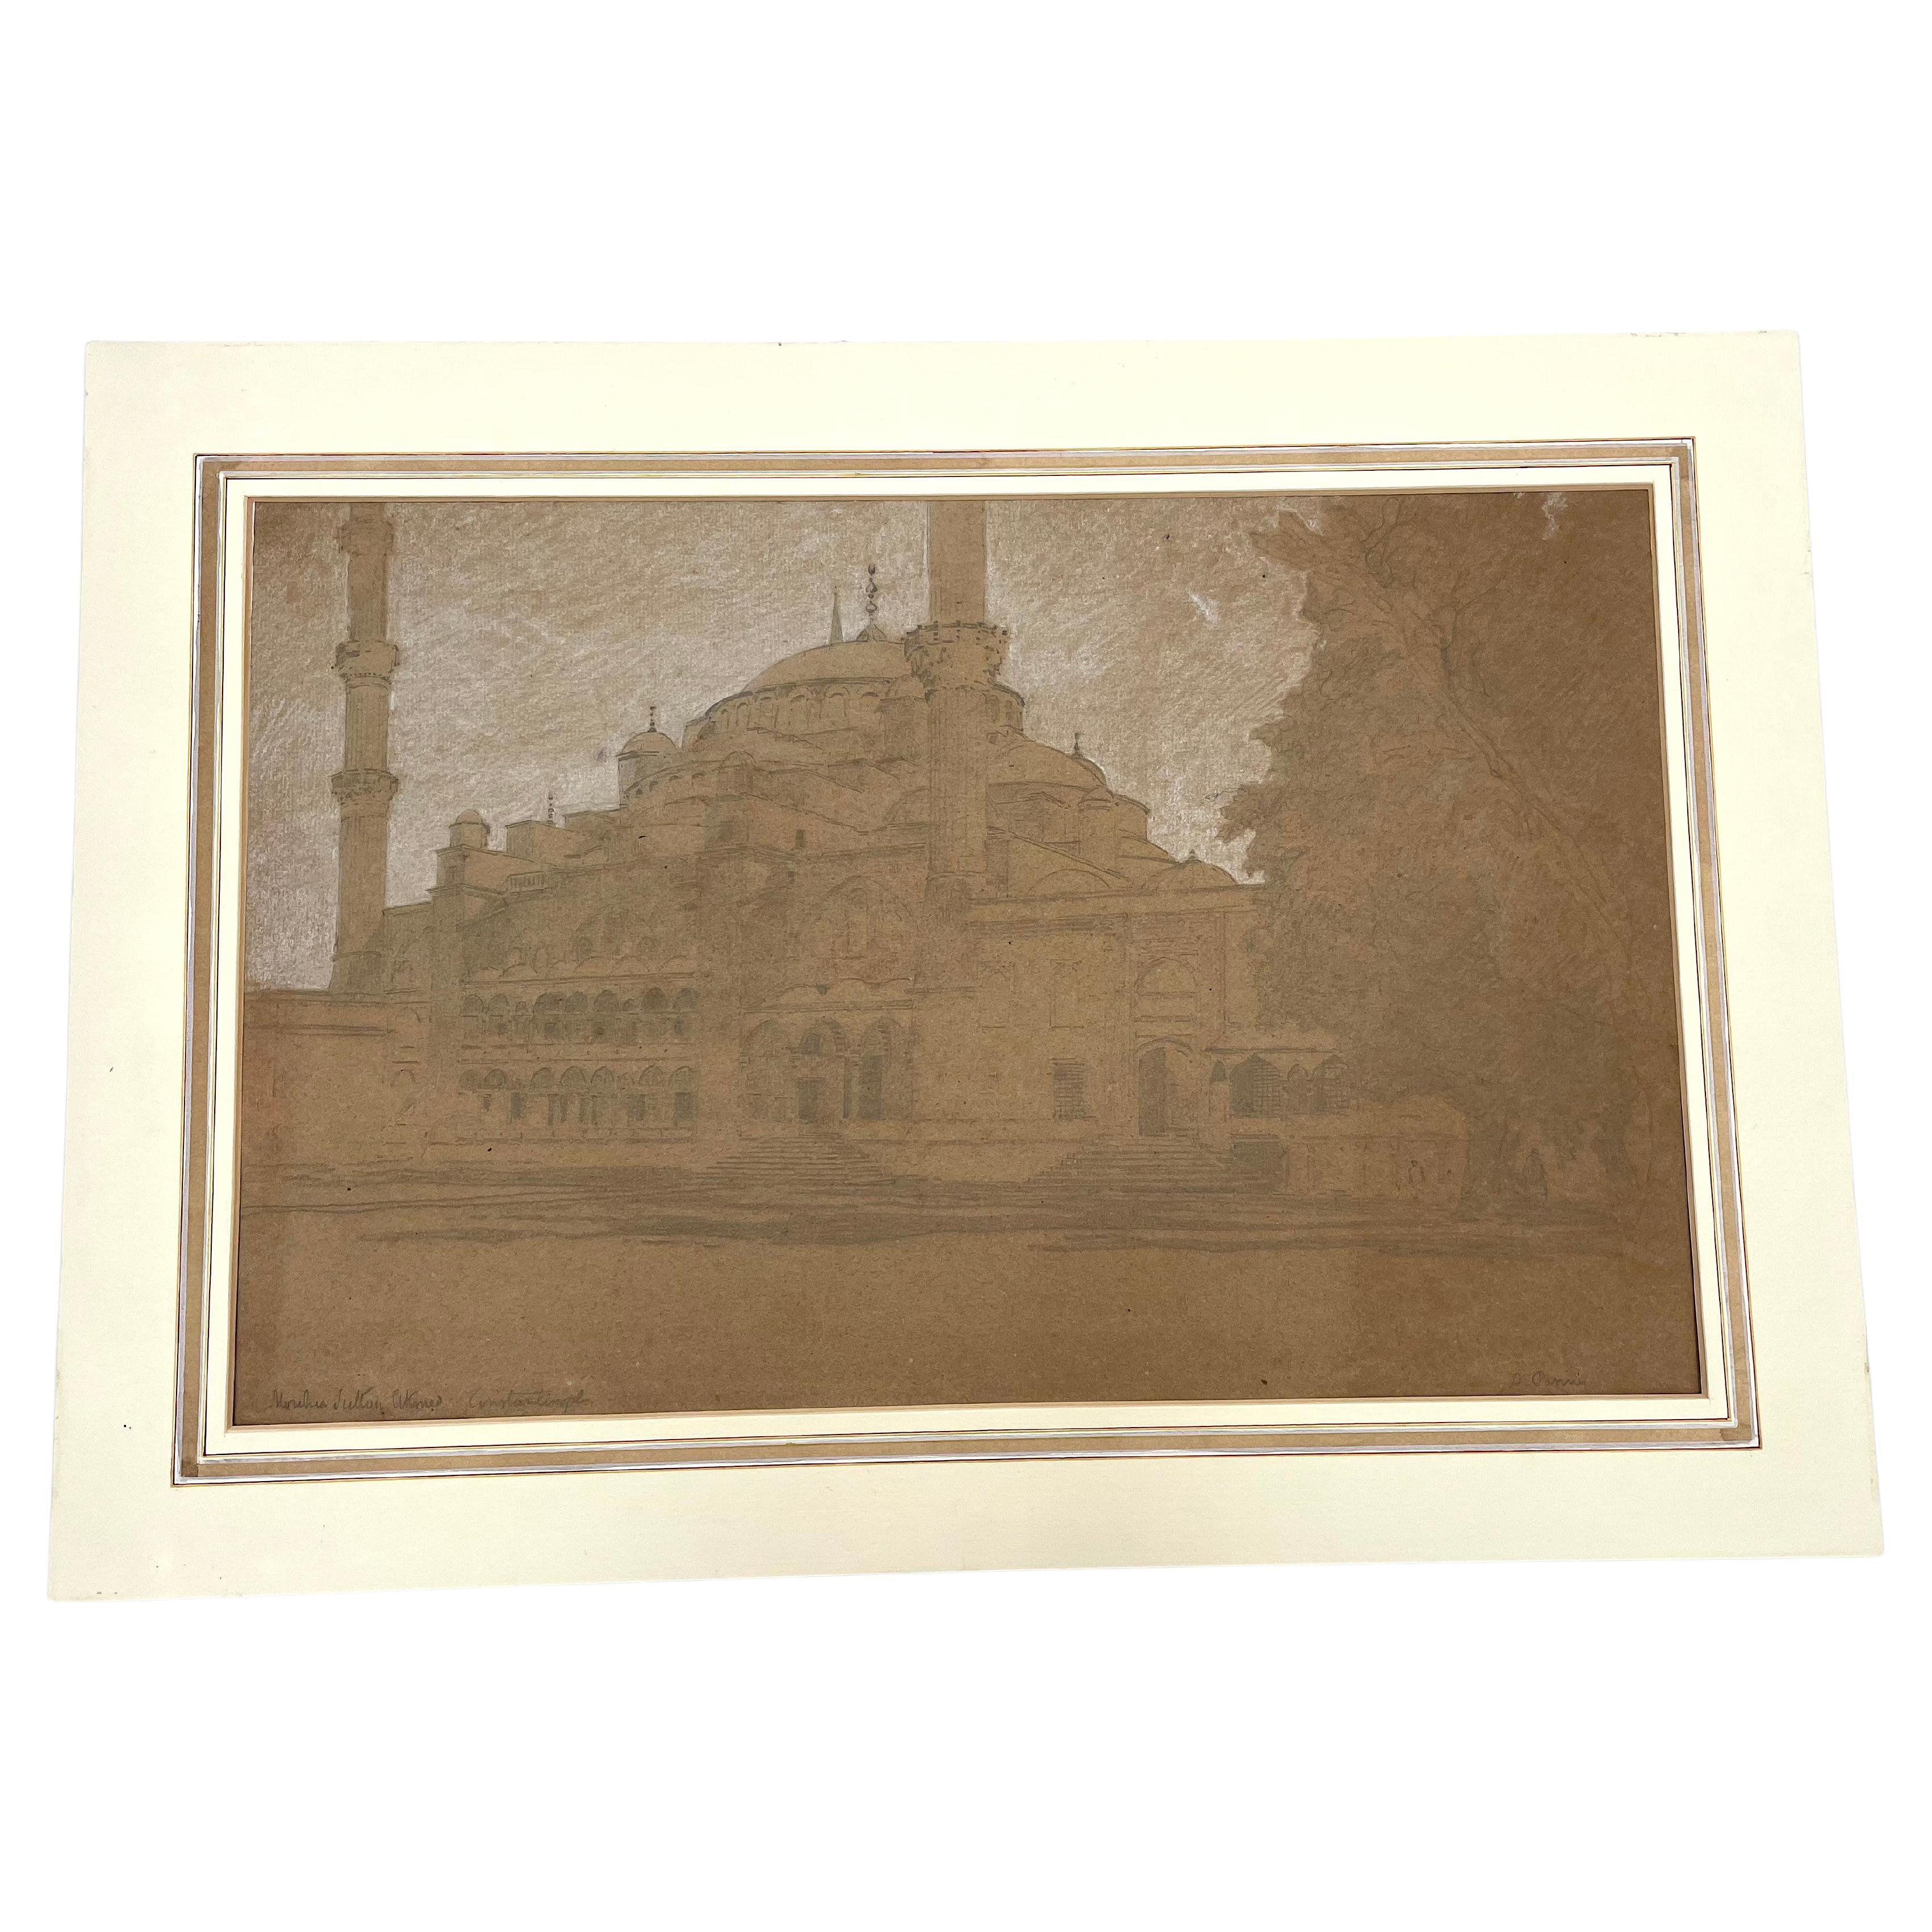 Dessin de la mosquée destantinople » par a. Pasini, vers 1860